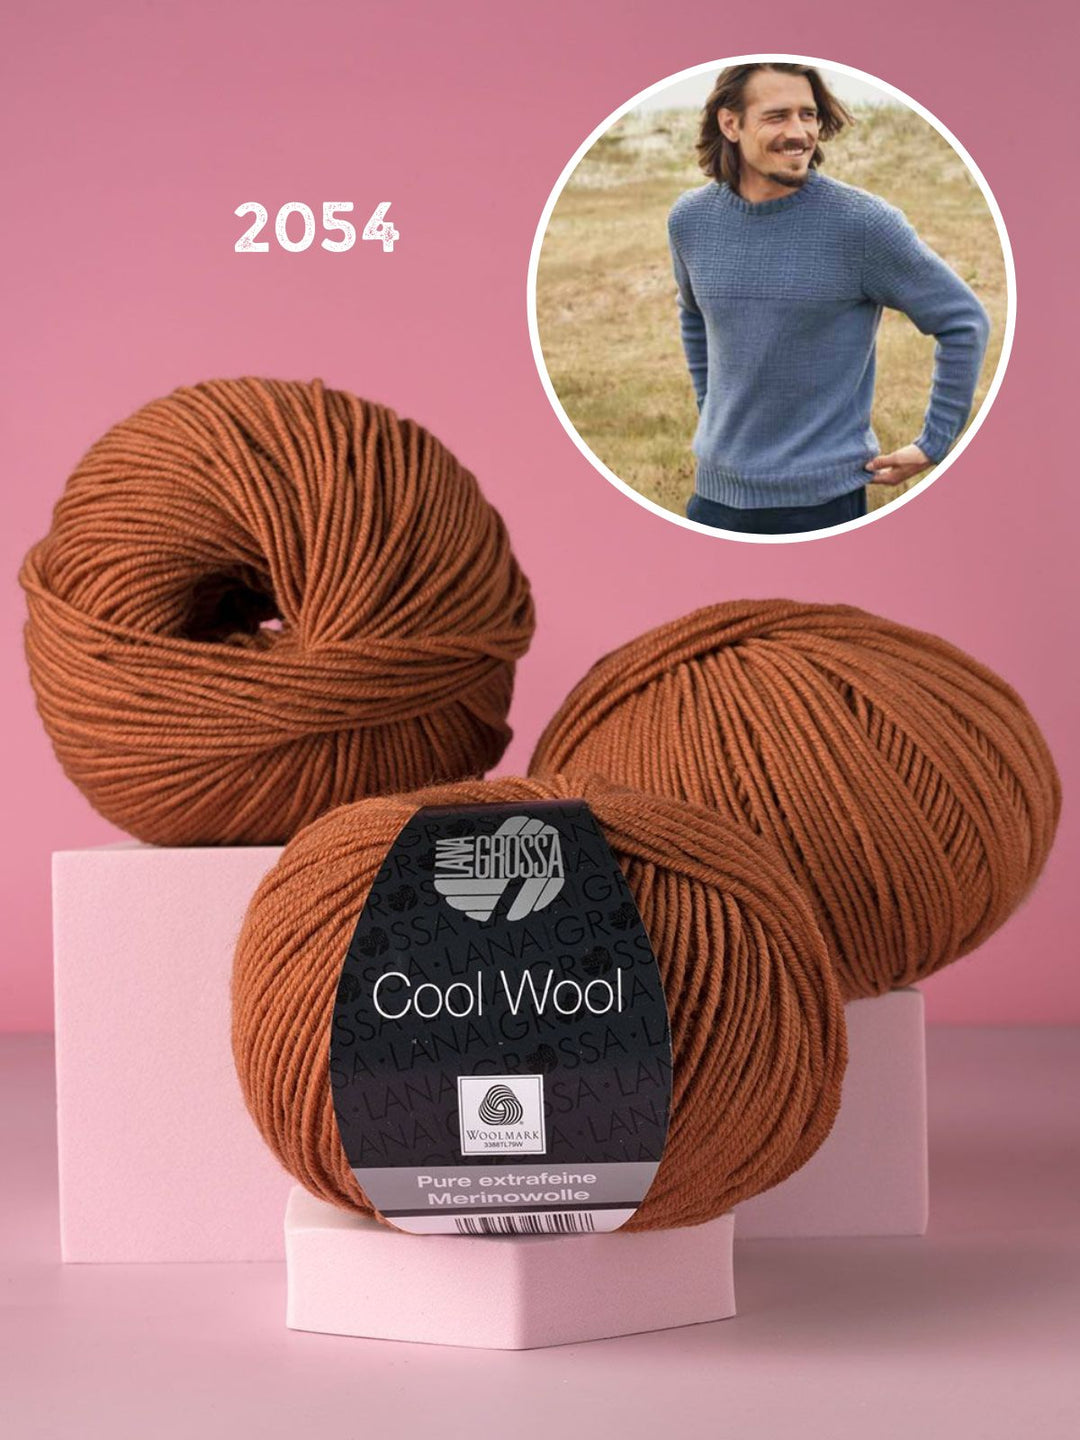 Breipakket Cool Wool herentrui